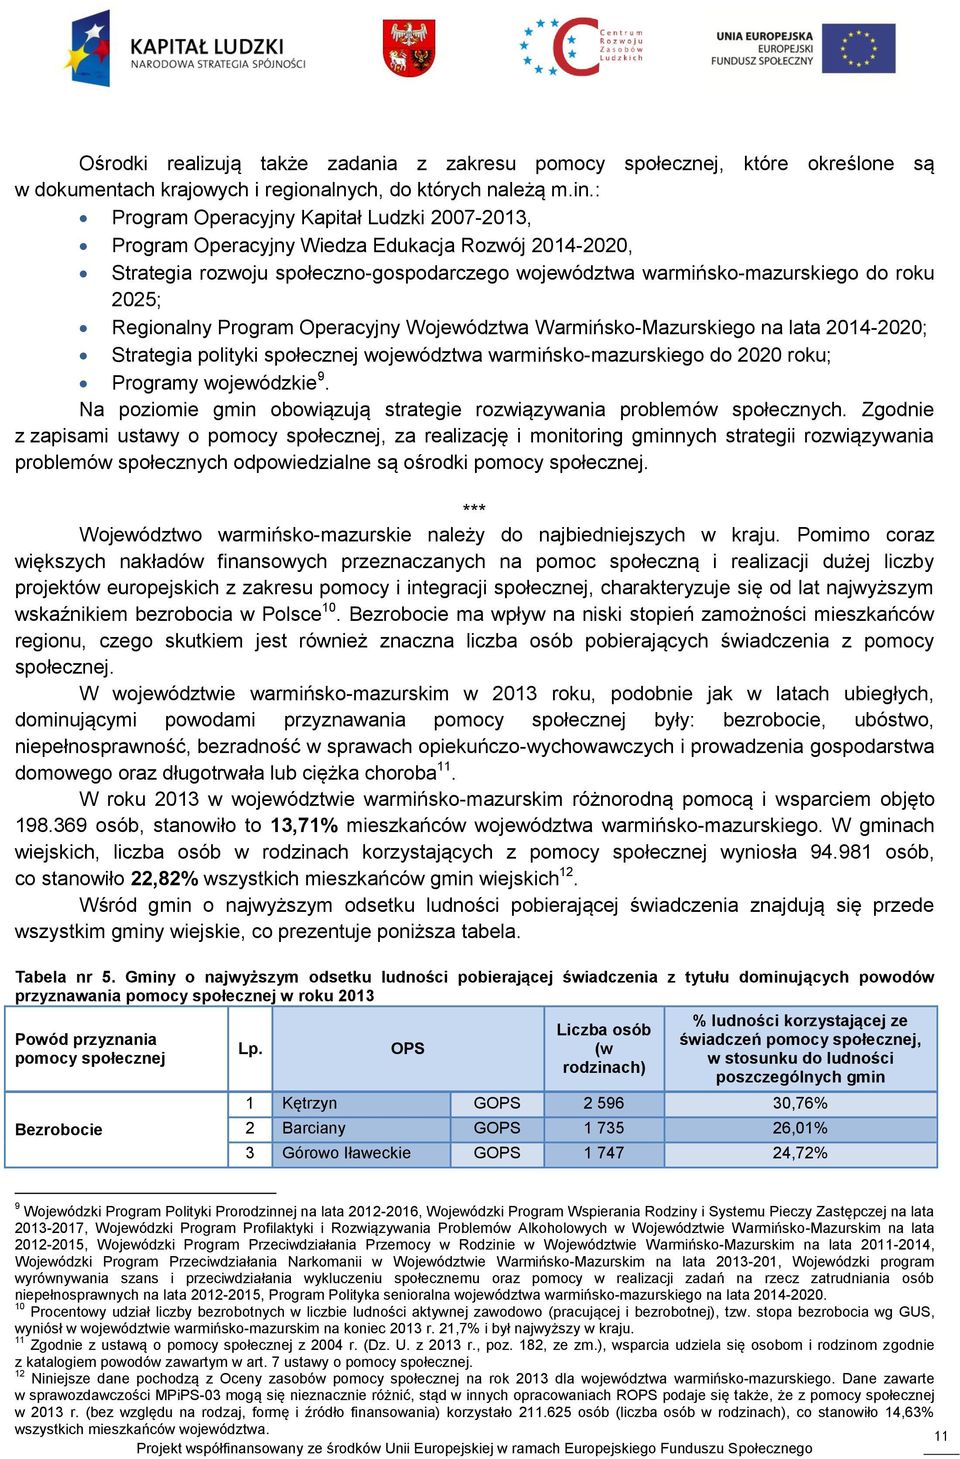 Regionalny Program Operacyjny Województwa Warmińsko-Mazurskiego na lata 2014-2020; Strategia polityki społecznej województwa warmińsko-mazurskiego do 2020 roku; Programy wojewódzkie 9.